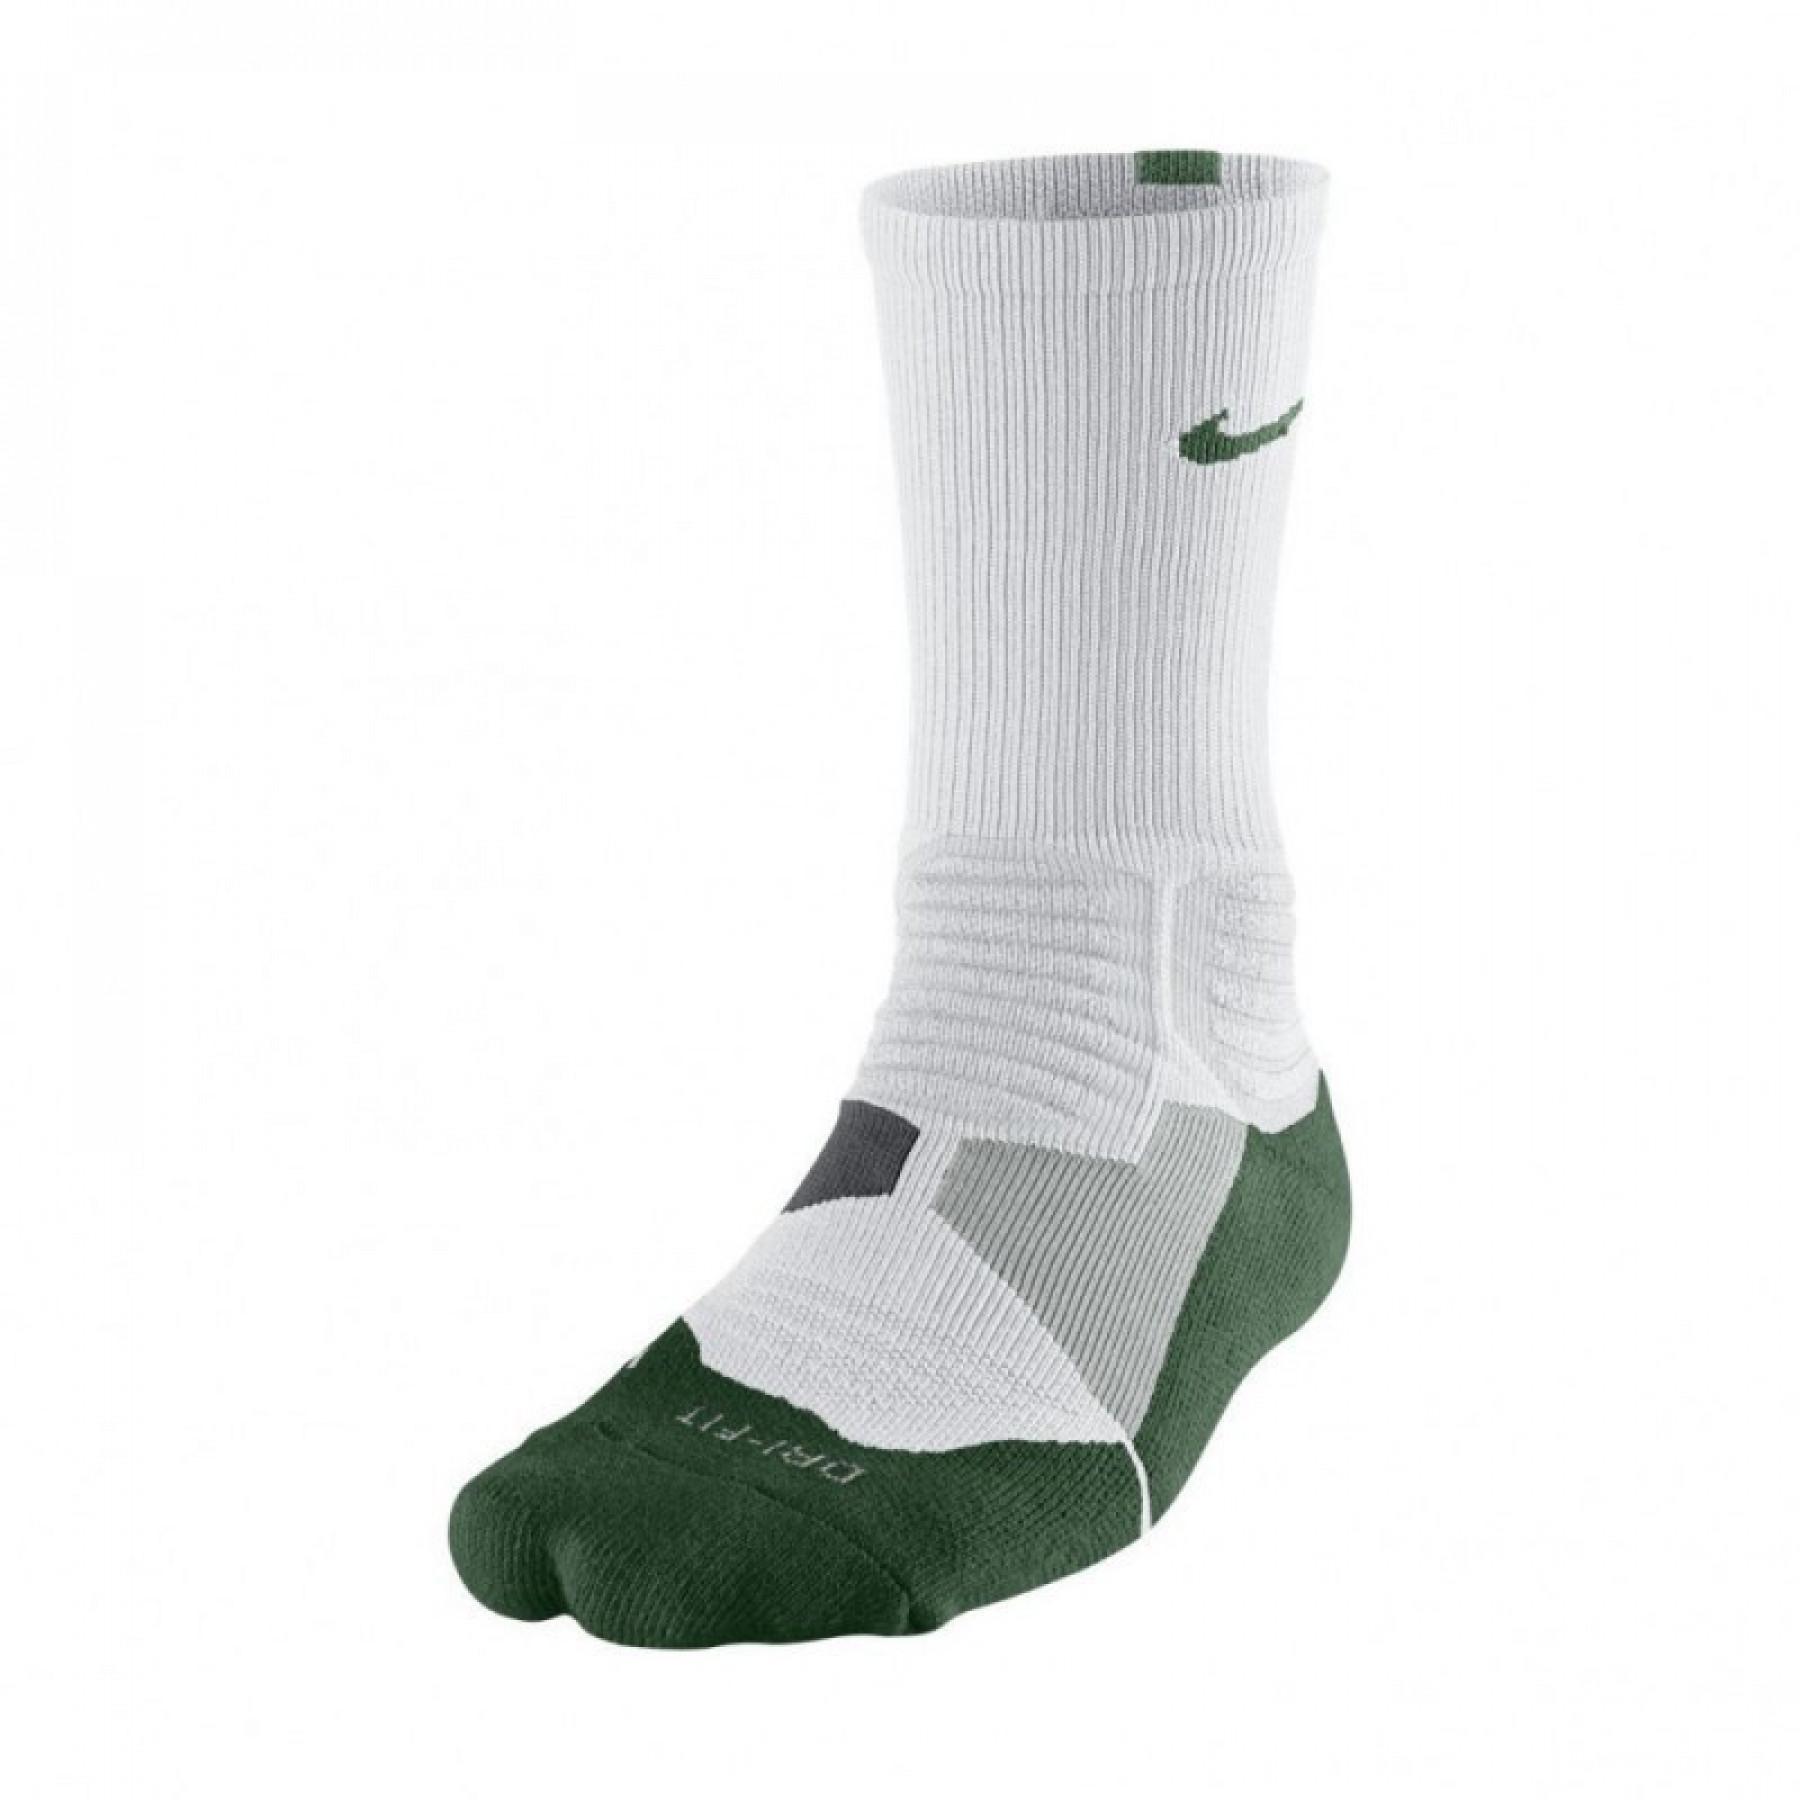 Conjunto de 3 pares de meias Nike HyperElite